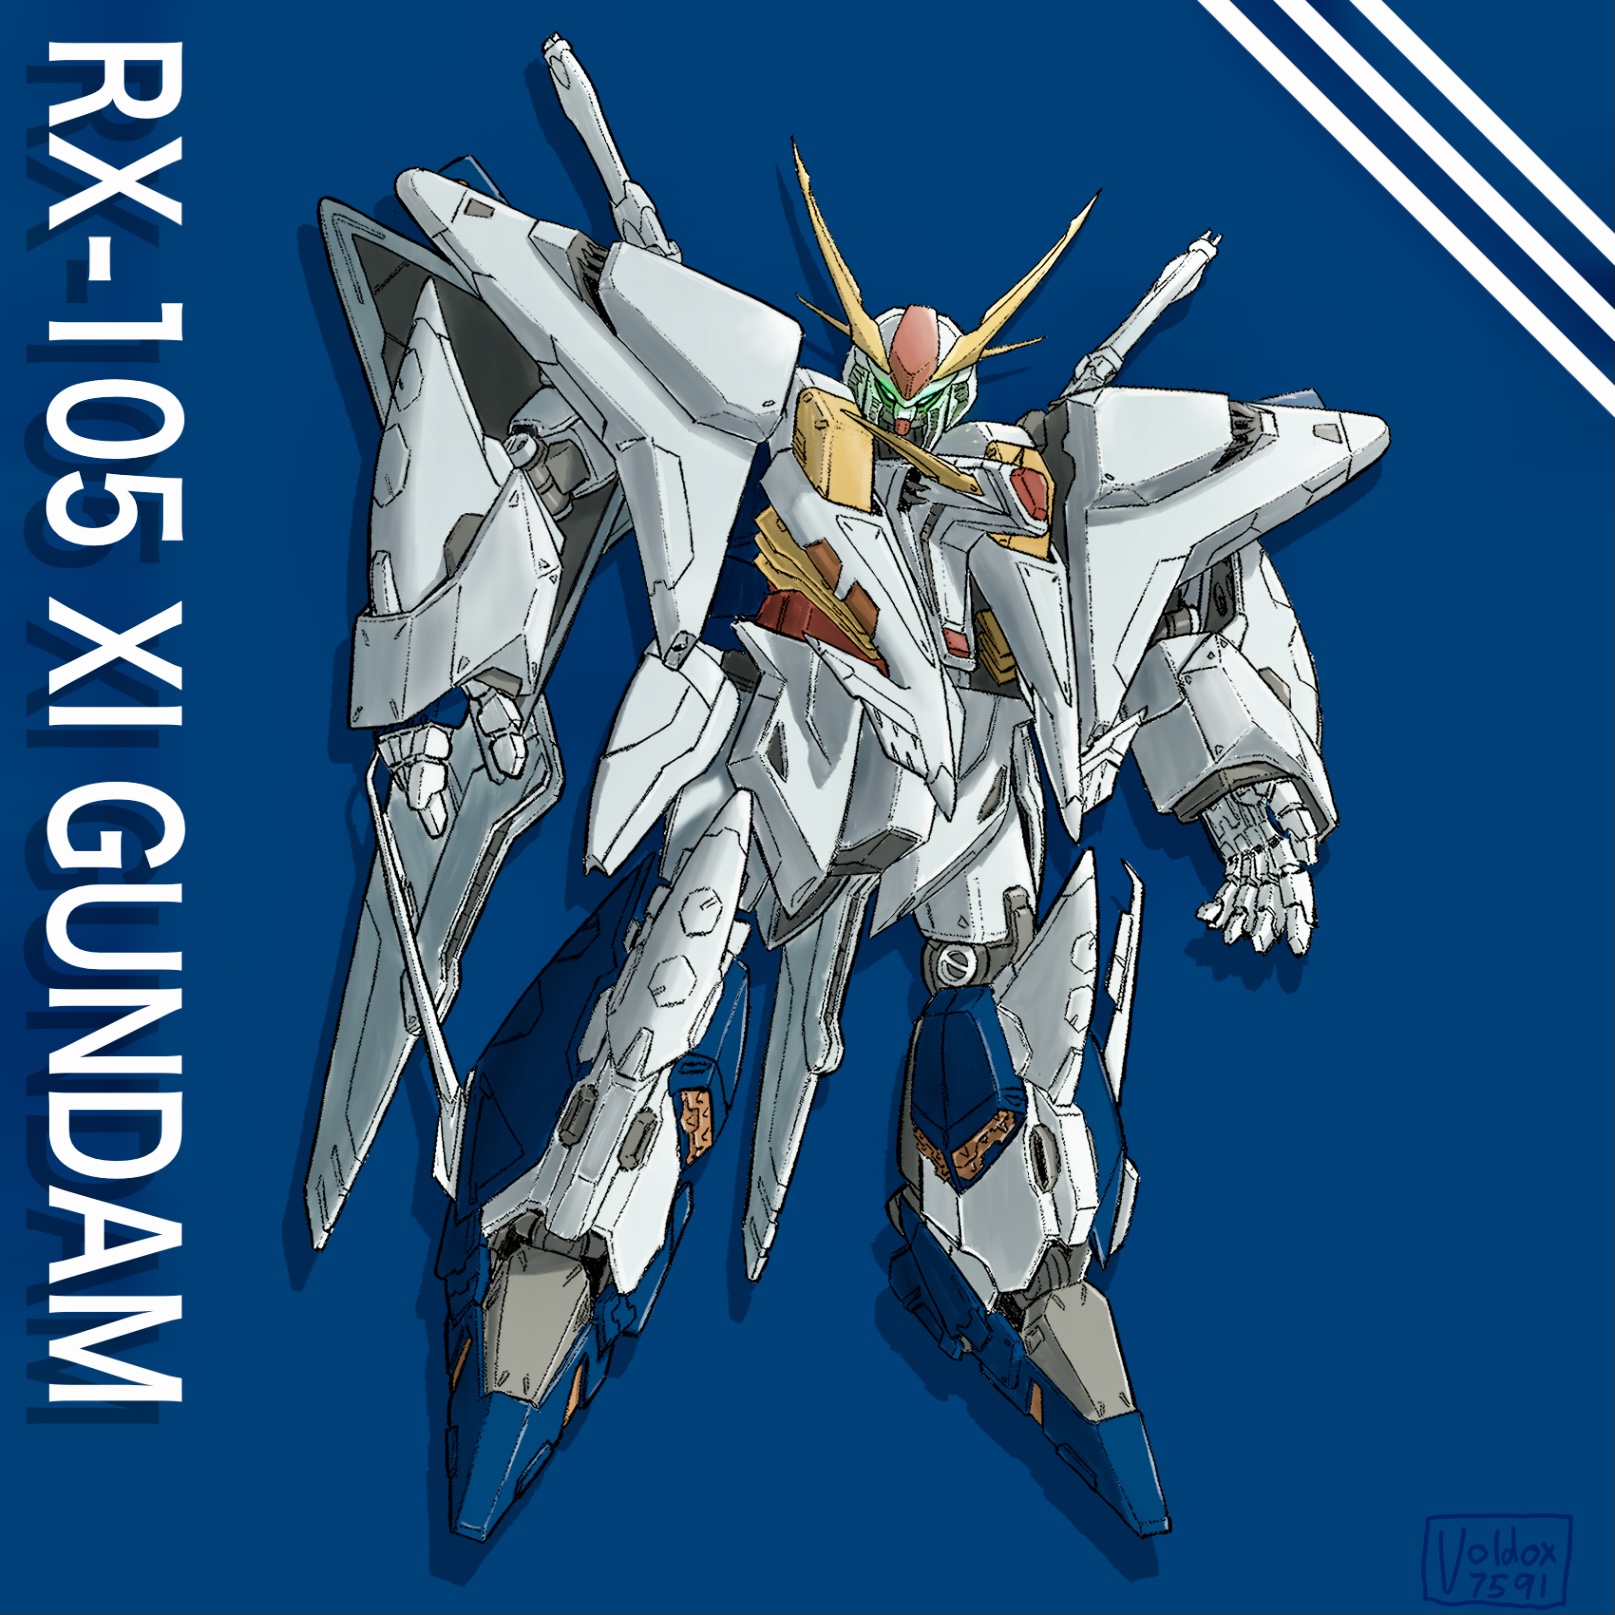 Anime Mechs Super Robot Taisen Mobile Suit Gundam Hathaway Gundam Gundam Artwork Digital Art Fan Art Wallpaper:1615x1615